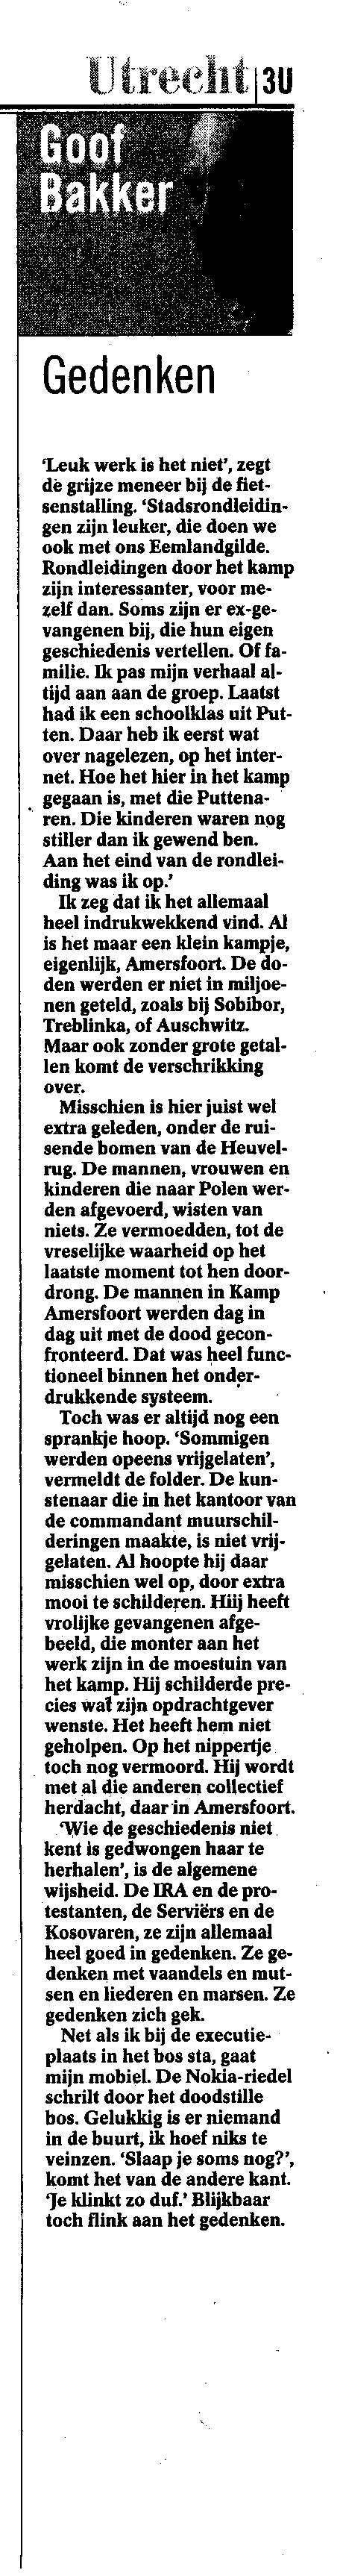 Volkskrant_2004-04-24-Gedenken